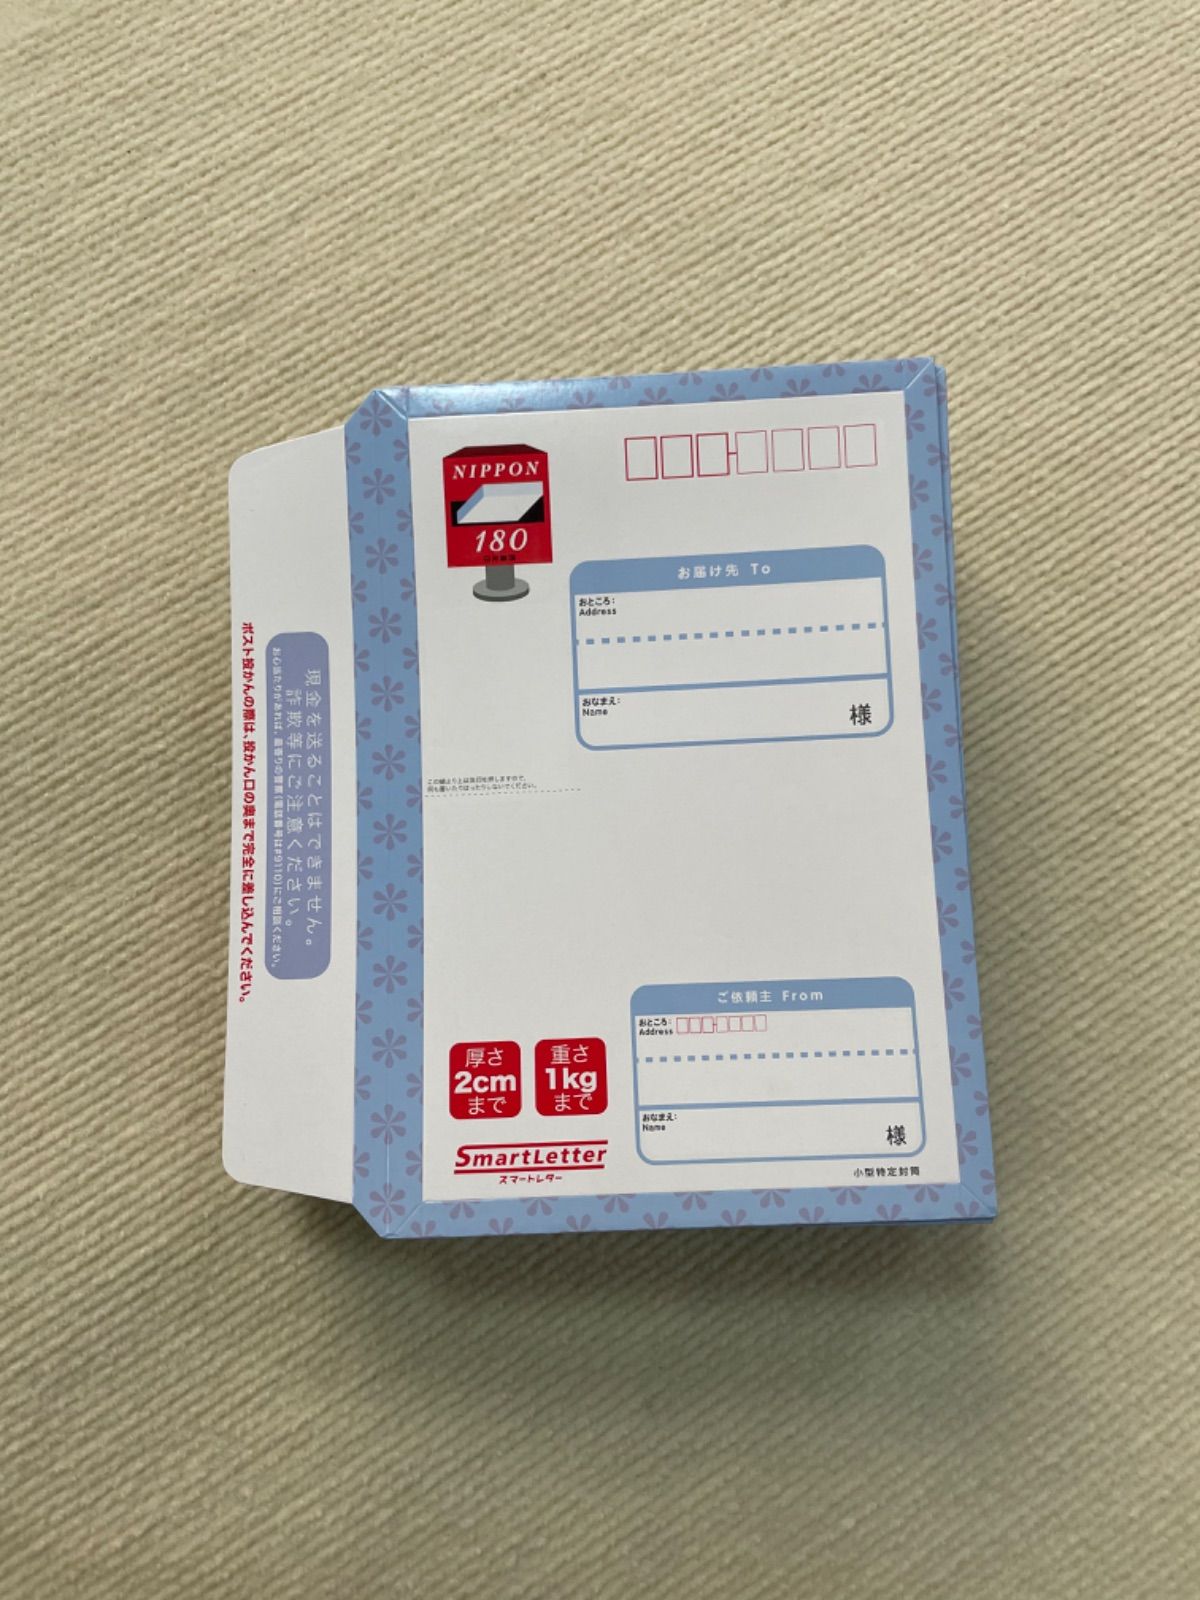 未使用 日本郵便 スマートレター 180円 300枚 - jpanda - メルカリ